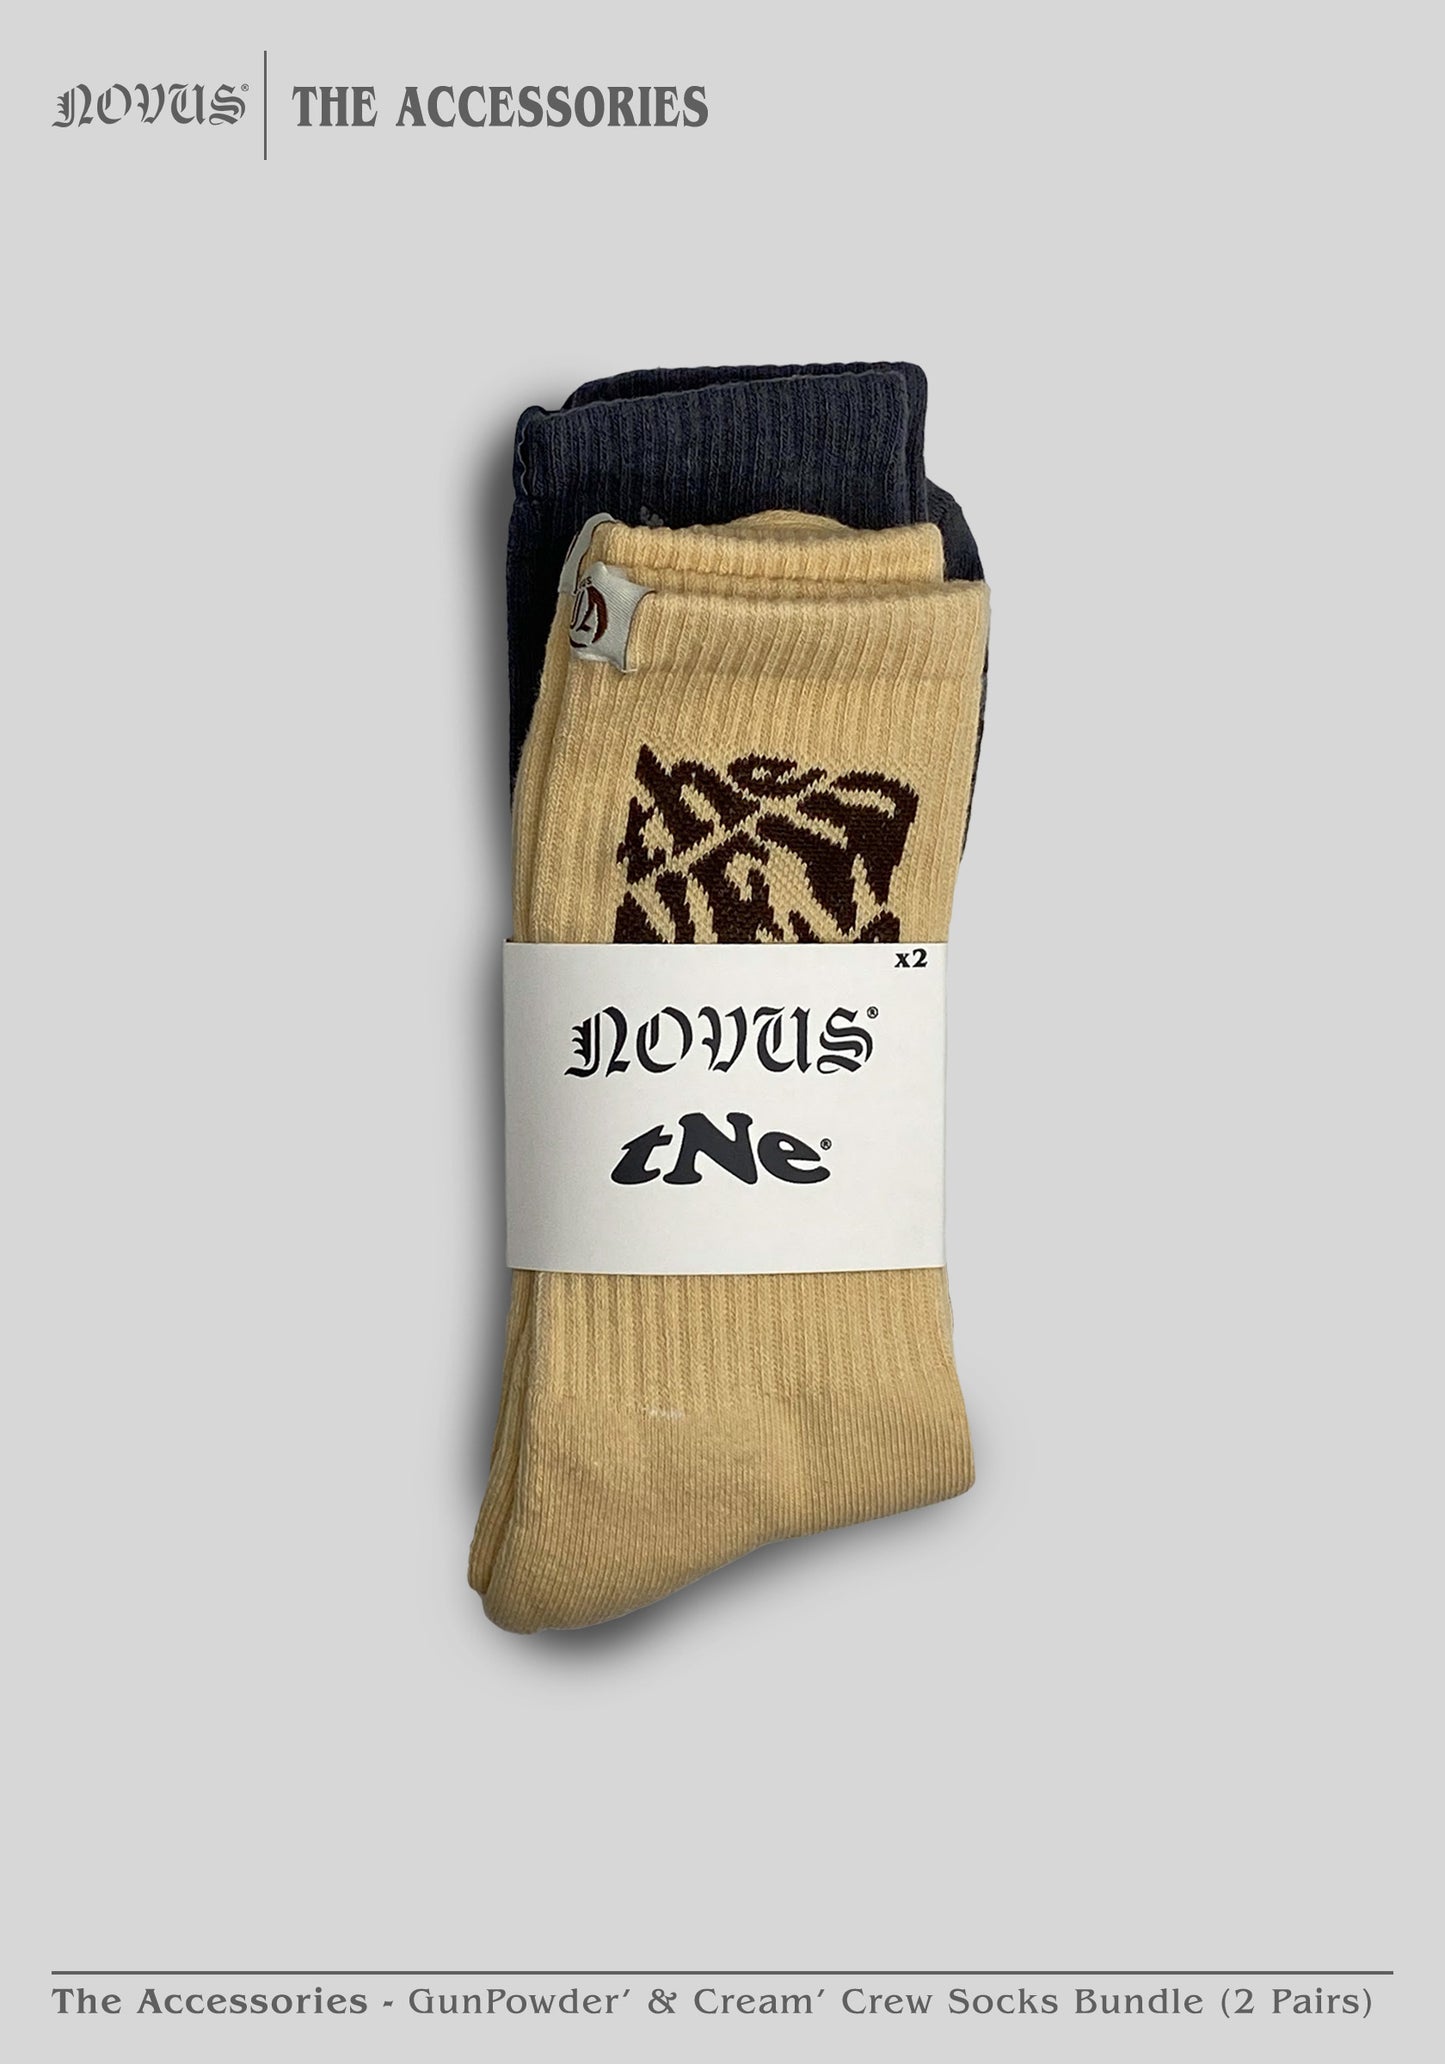 GunPowder' & Cream' Crew Socks Bundle (2 Pairs)